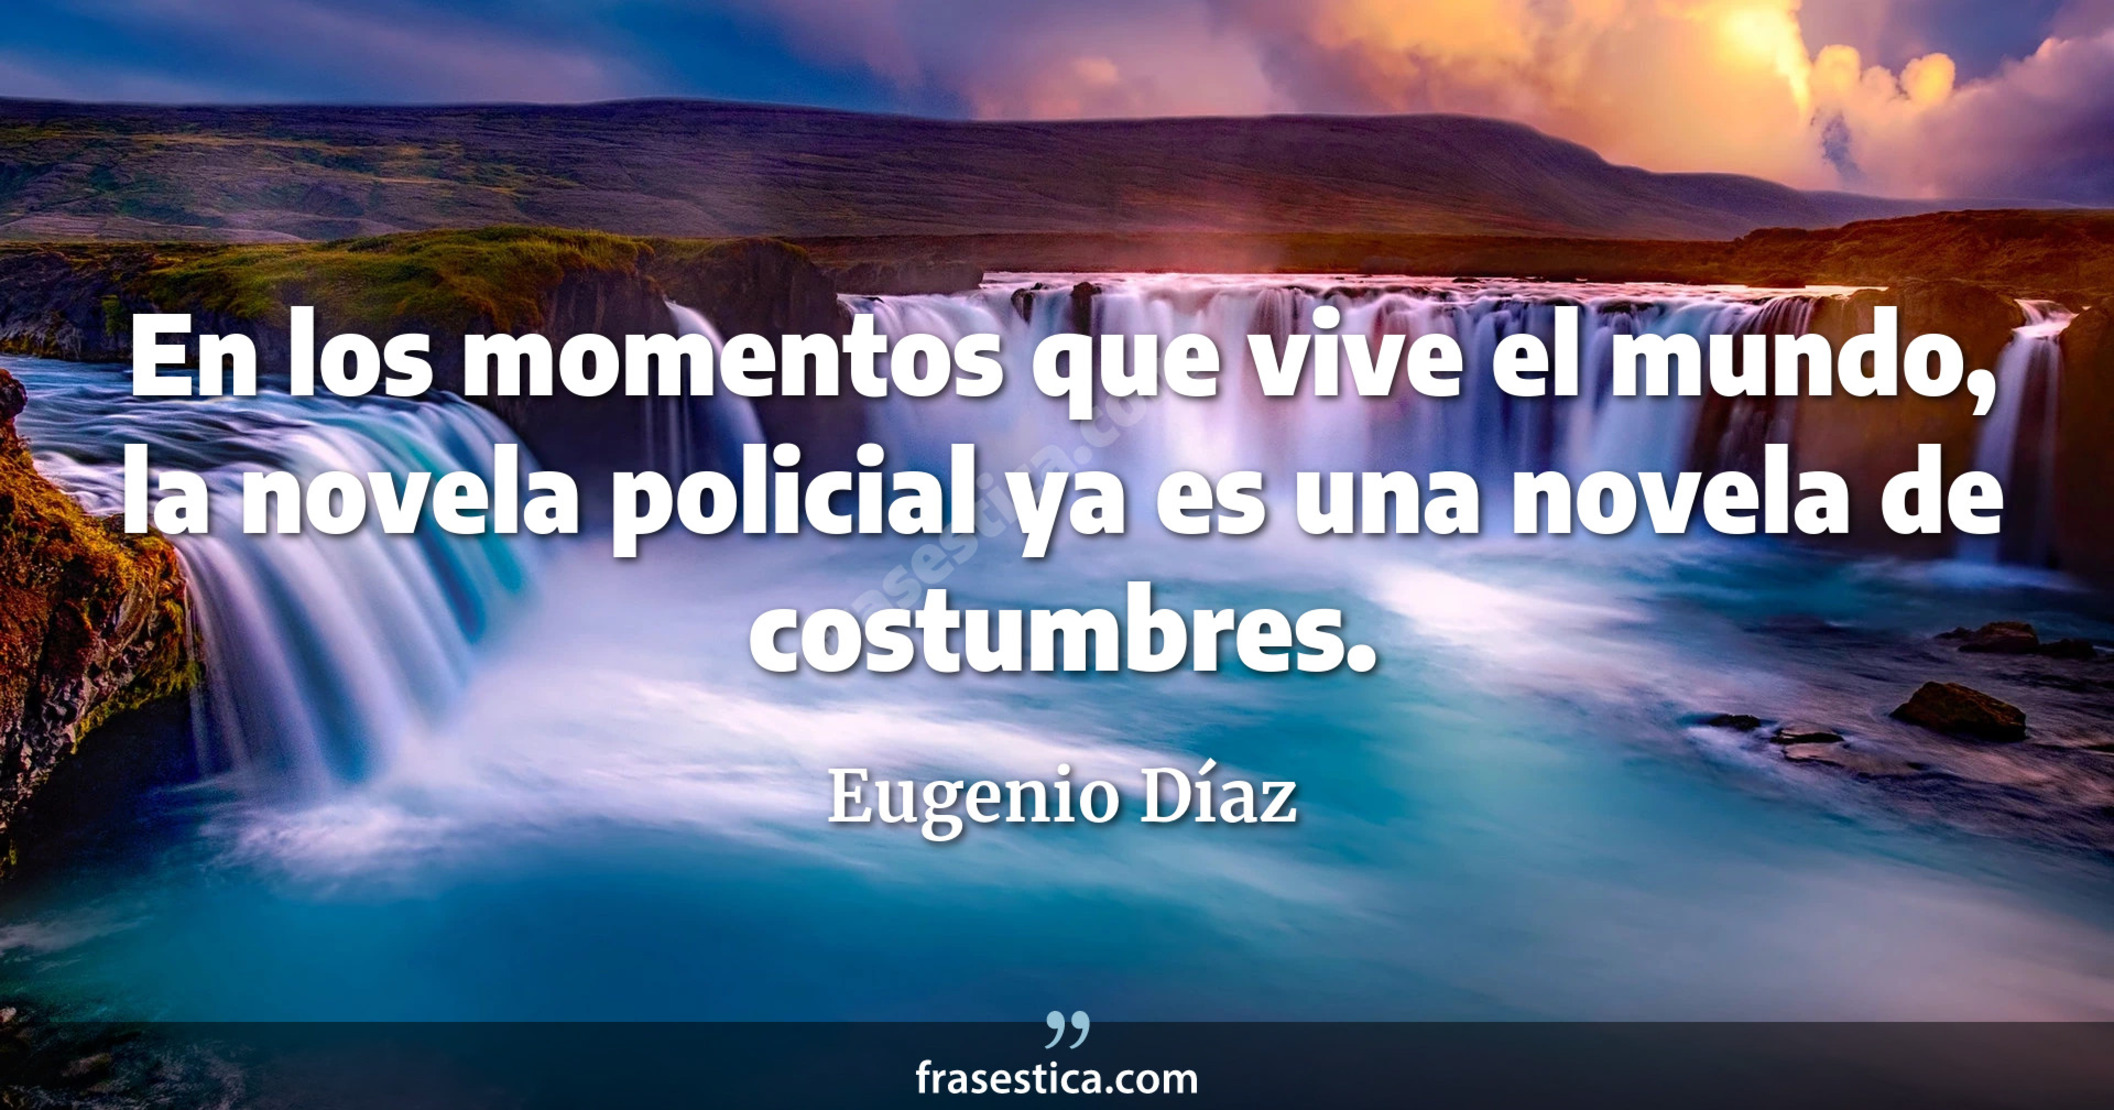 En los momentos que vive el mundo, la novela policial ya es una novela de costumbres. - Eugenio Díaz